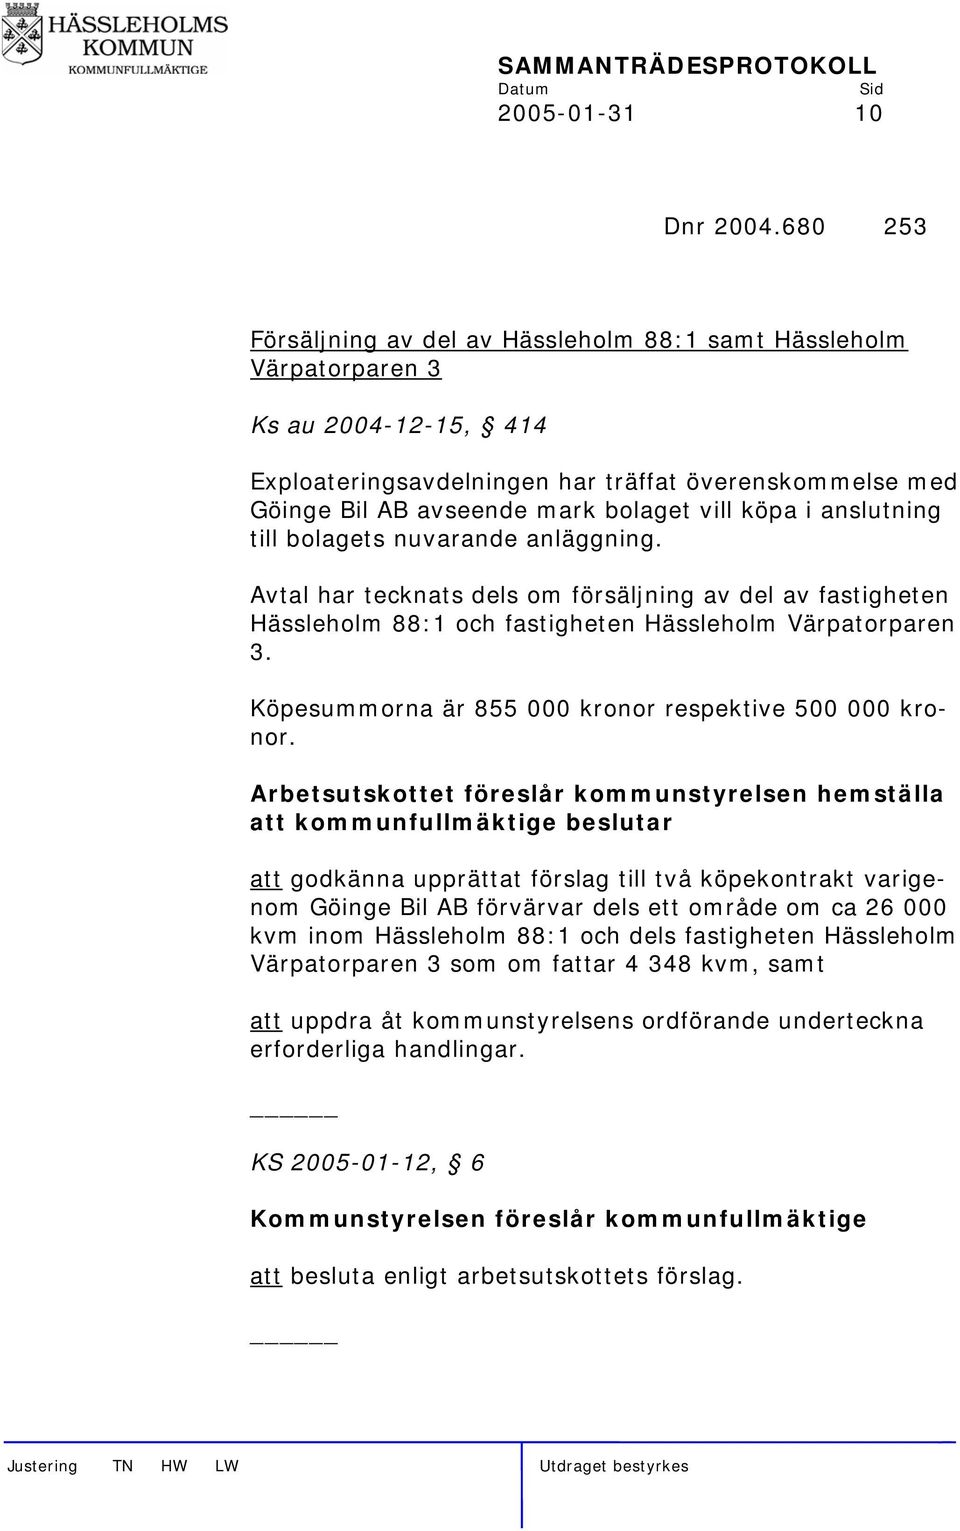 köpa i anslutning till bolagets nuvarande anläggning. Avtal har tecknats dels om försäljning av del av fastigheten Hässleholm 88:1 och fastigheten Hässleholm Värpatorparen 3.